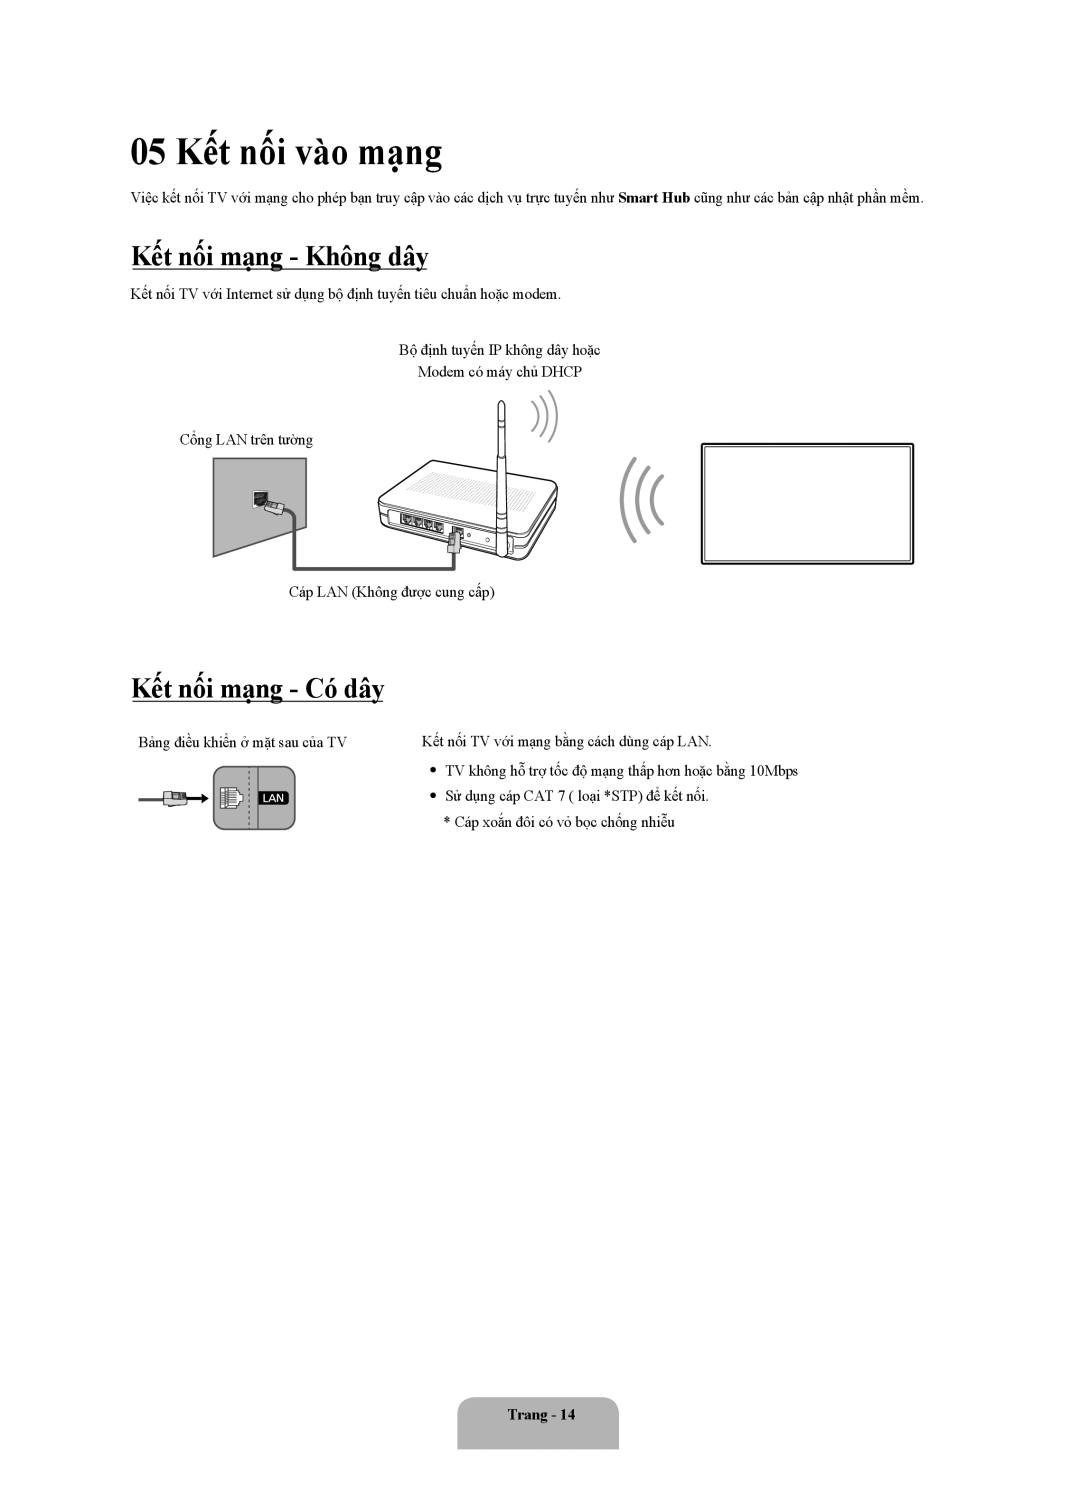 Samsung UA55MU6100KXXV, UA50MU6100KXXV manual 05 Kết nối vào mạng, Kết nối mạng - Không dây, Kết nối mạng - Có dây, Trang 